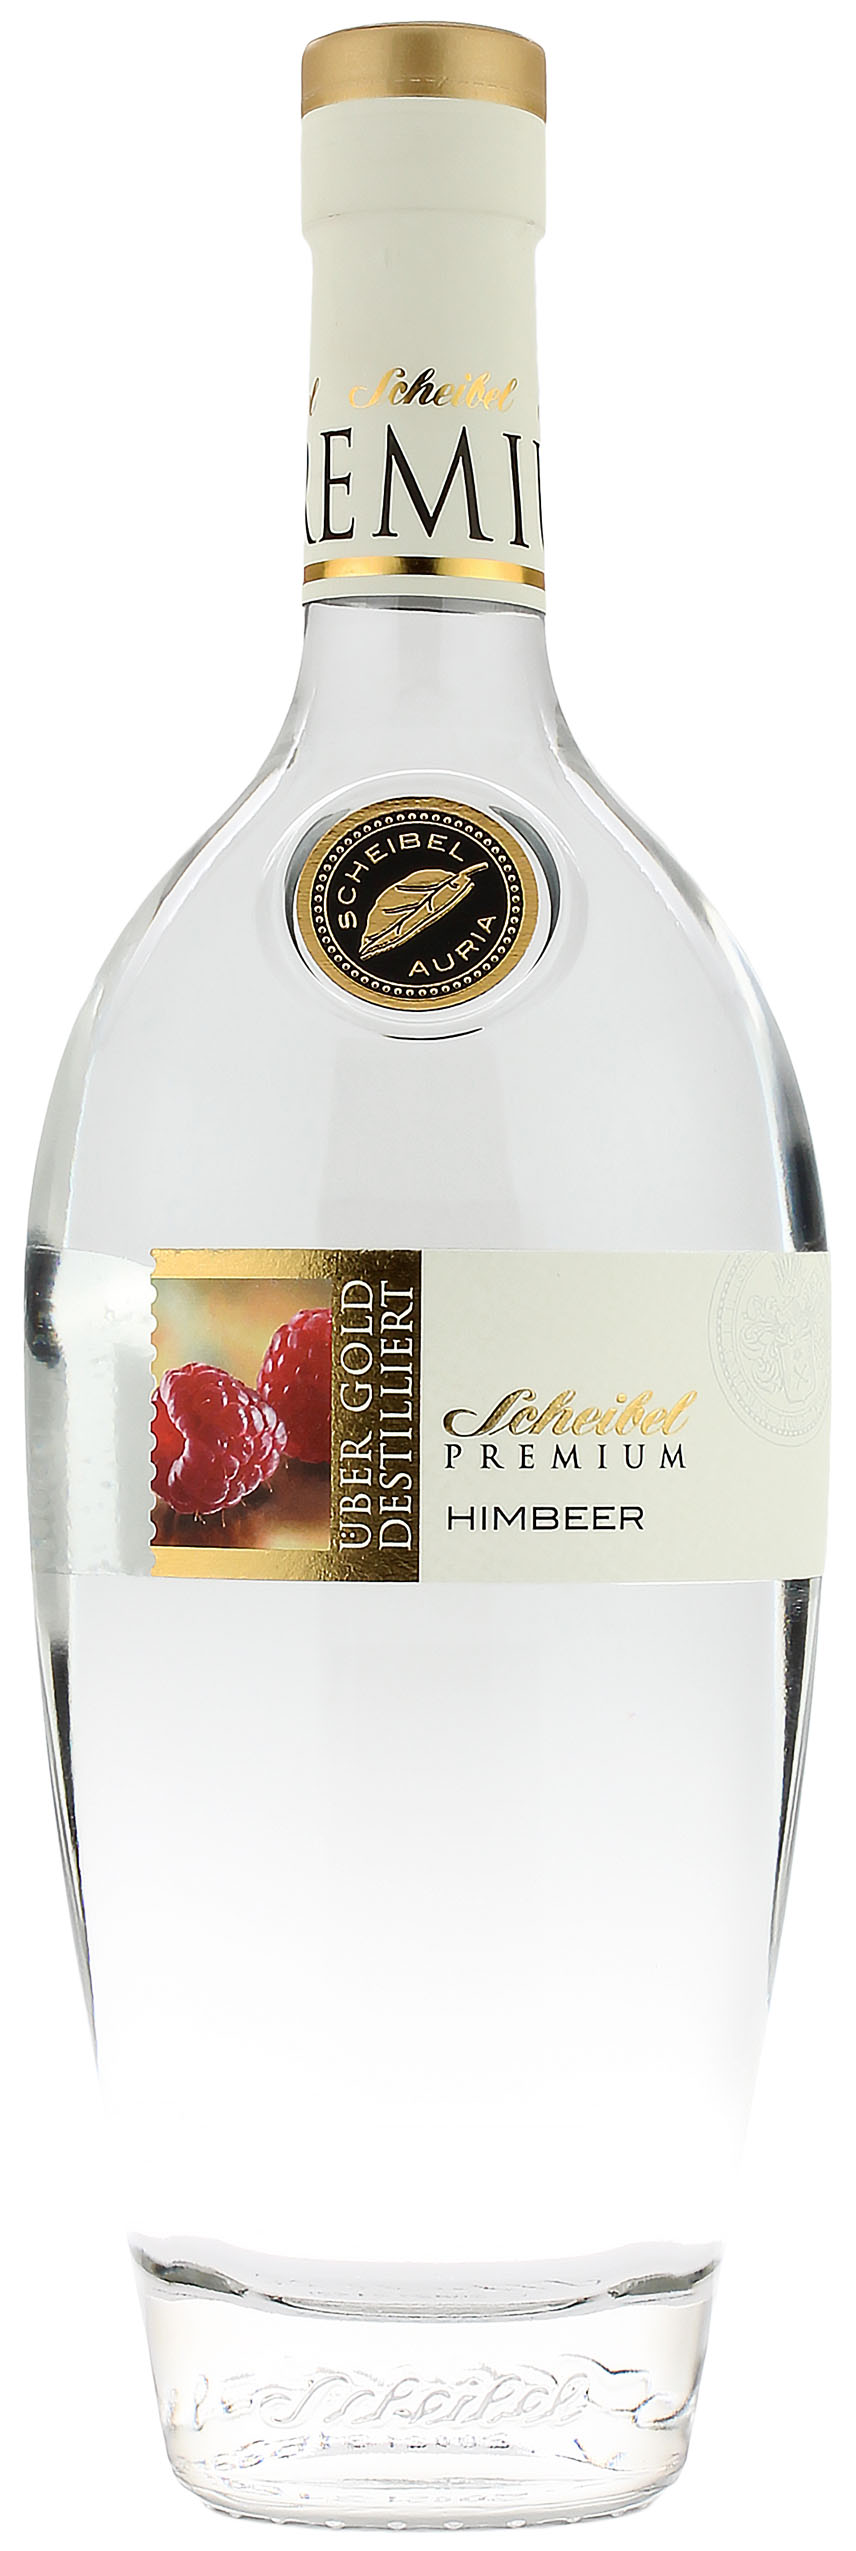 Scheibel Premium Himbeer 41.0% 0,7l